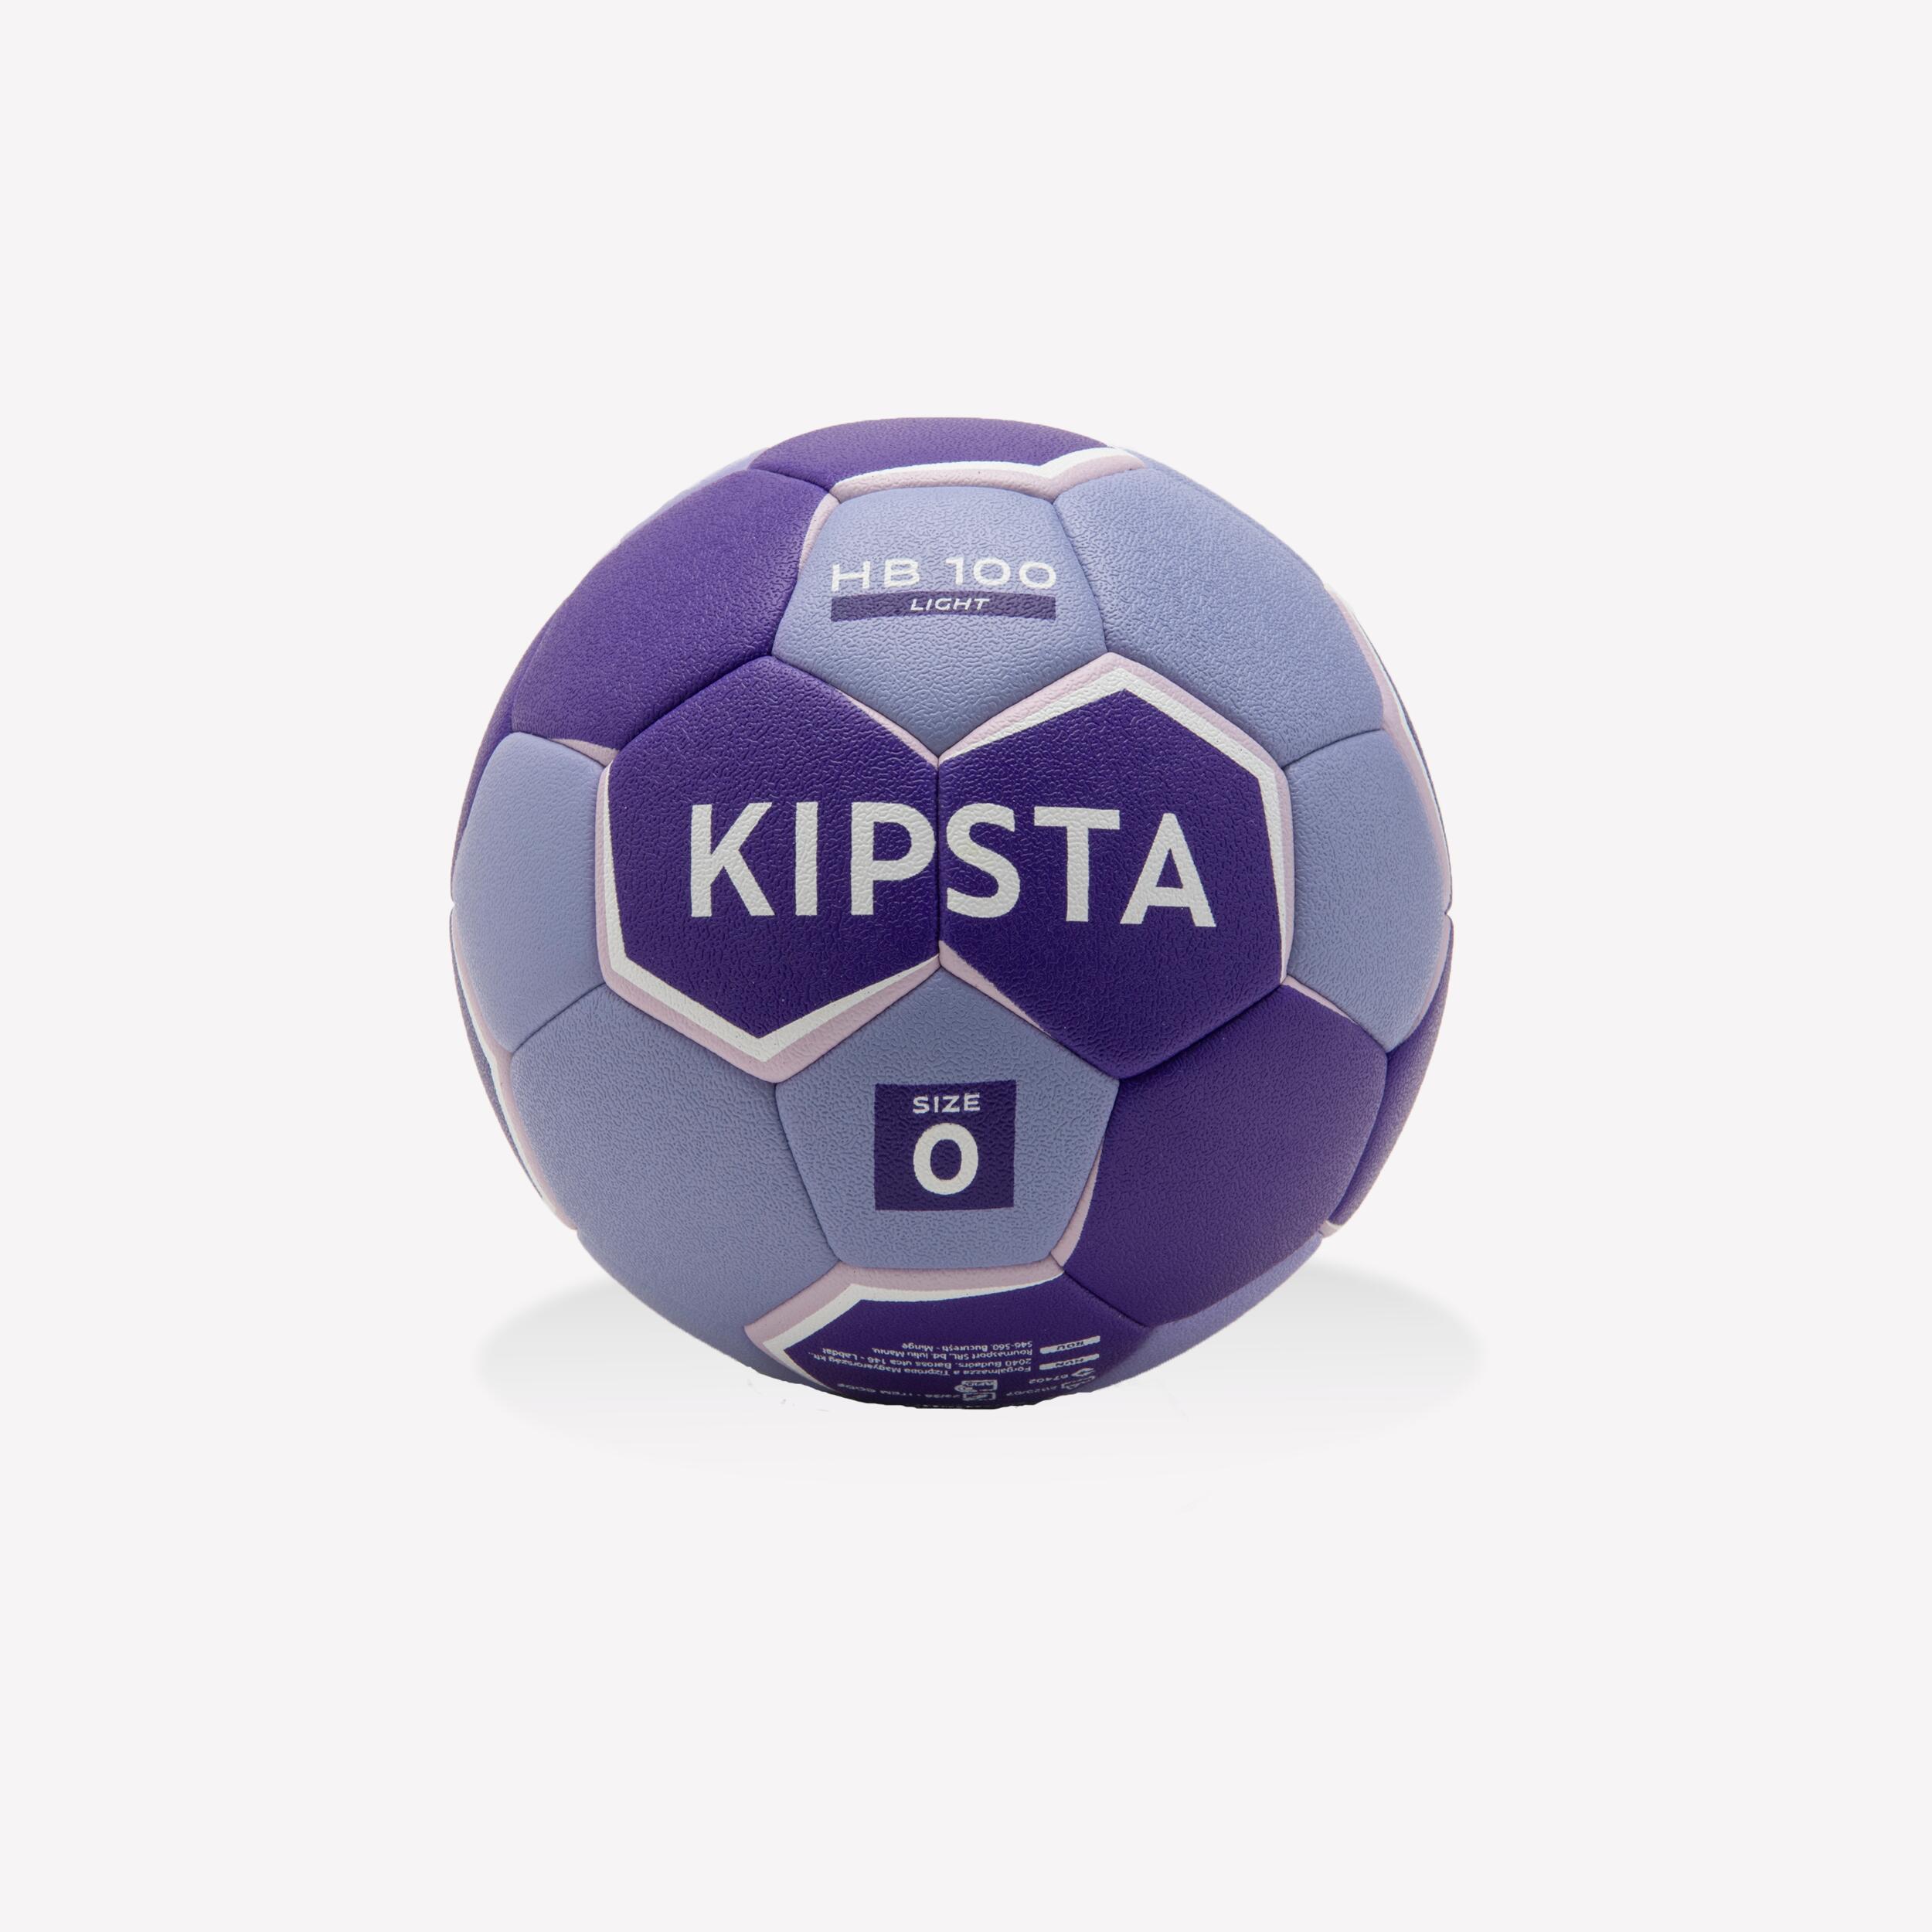 KIPSTA Ballon De Handball Taille 0 - Hb100 Light Violet